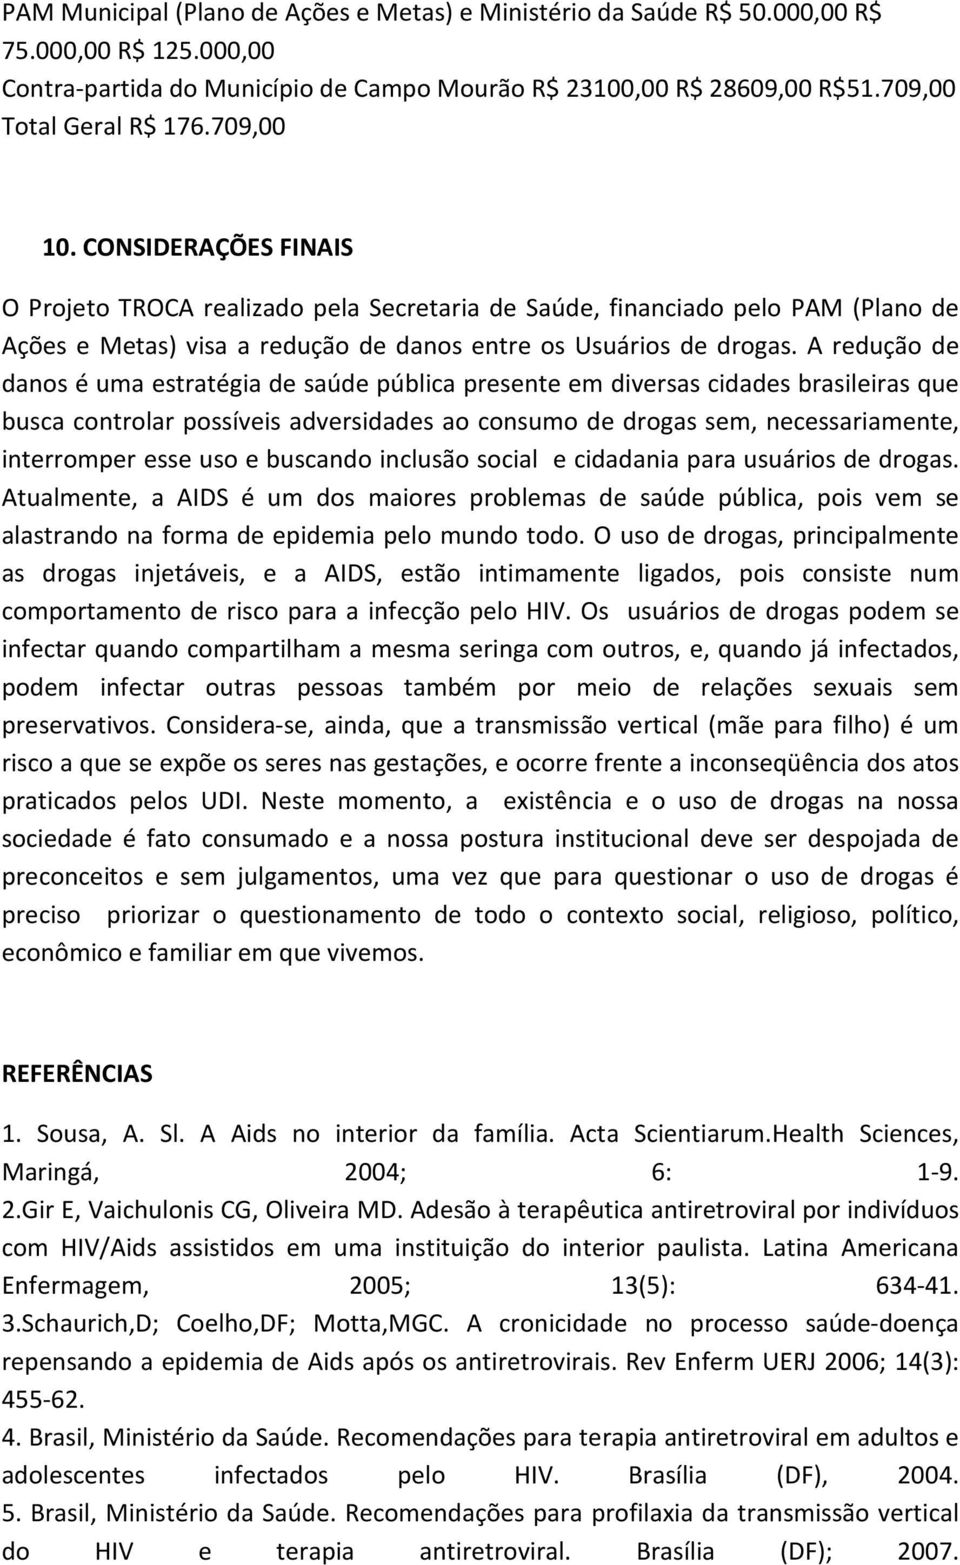 A redução de danos é uma estratégia de saúde pública presente em diversas cidades brasileiras que busca controlar possíveis adversidades ao consumo de drogas sem, necessariamente, interromper esse